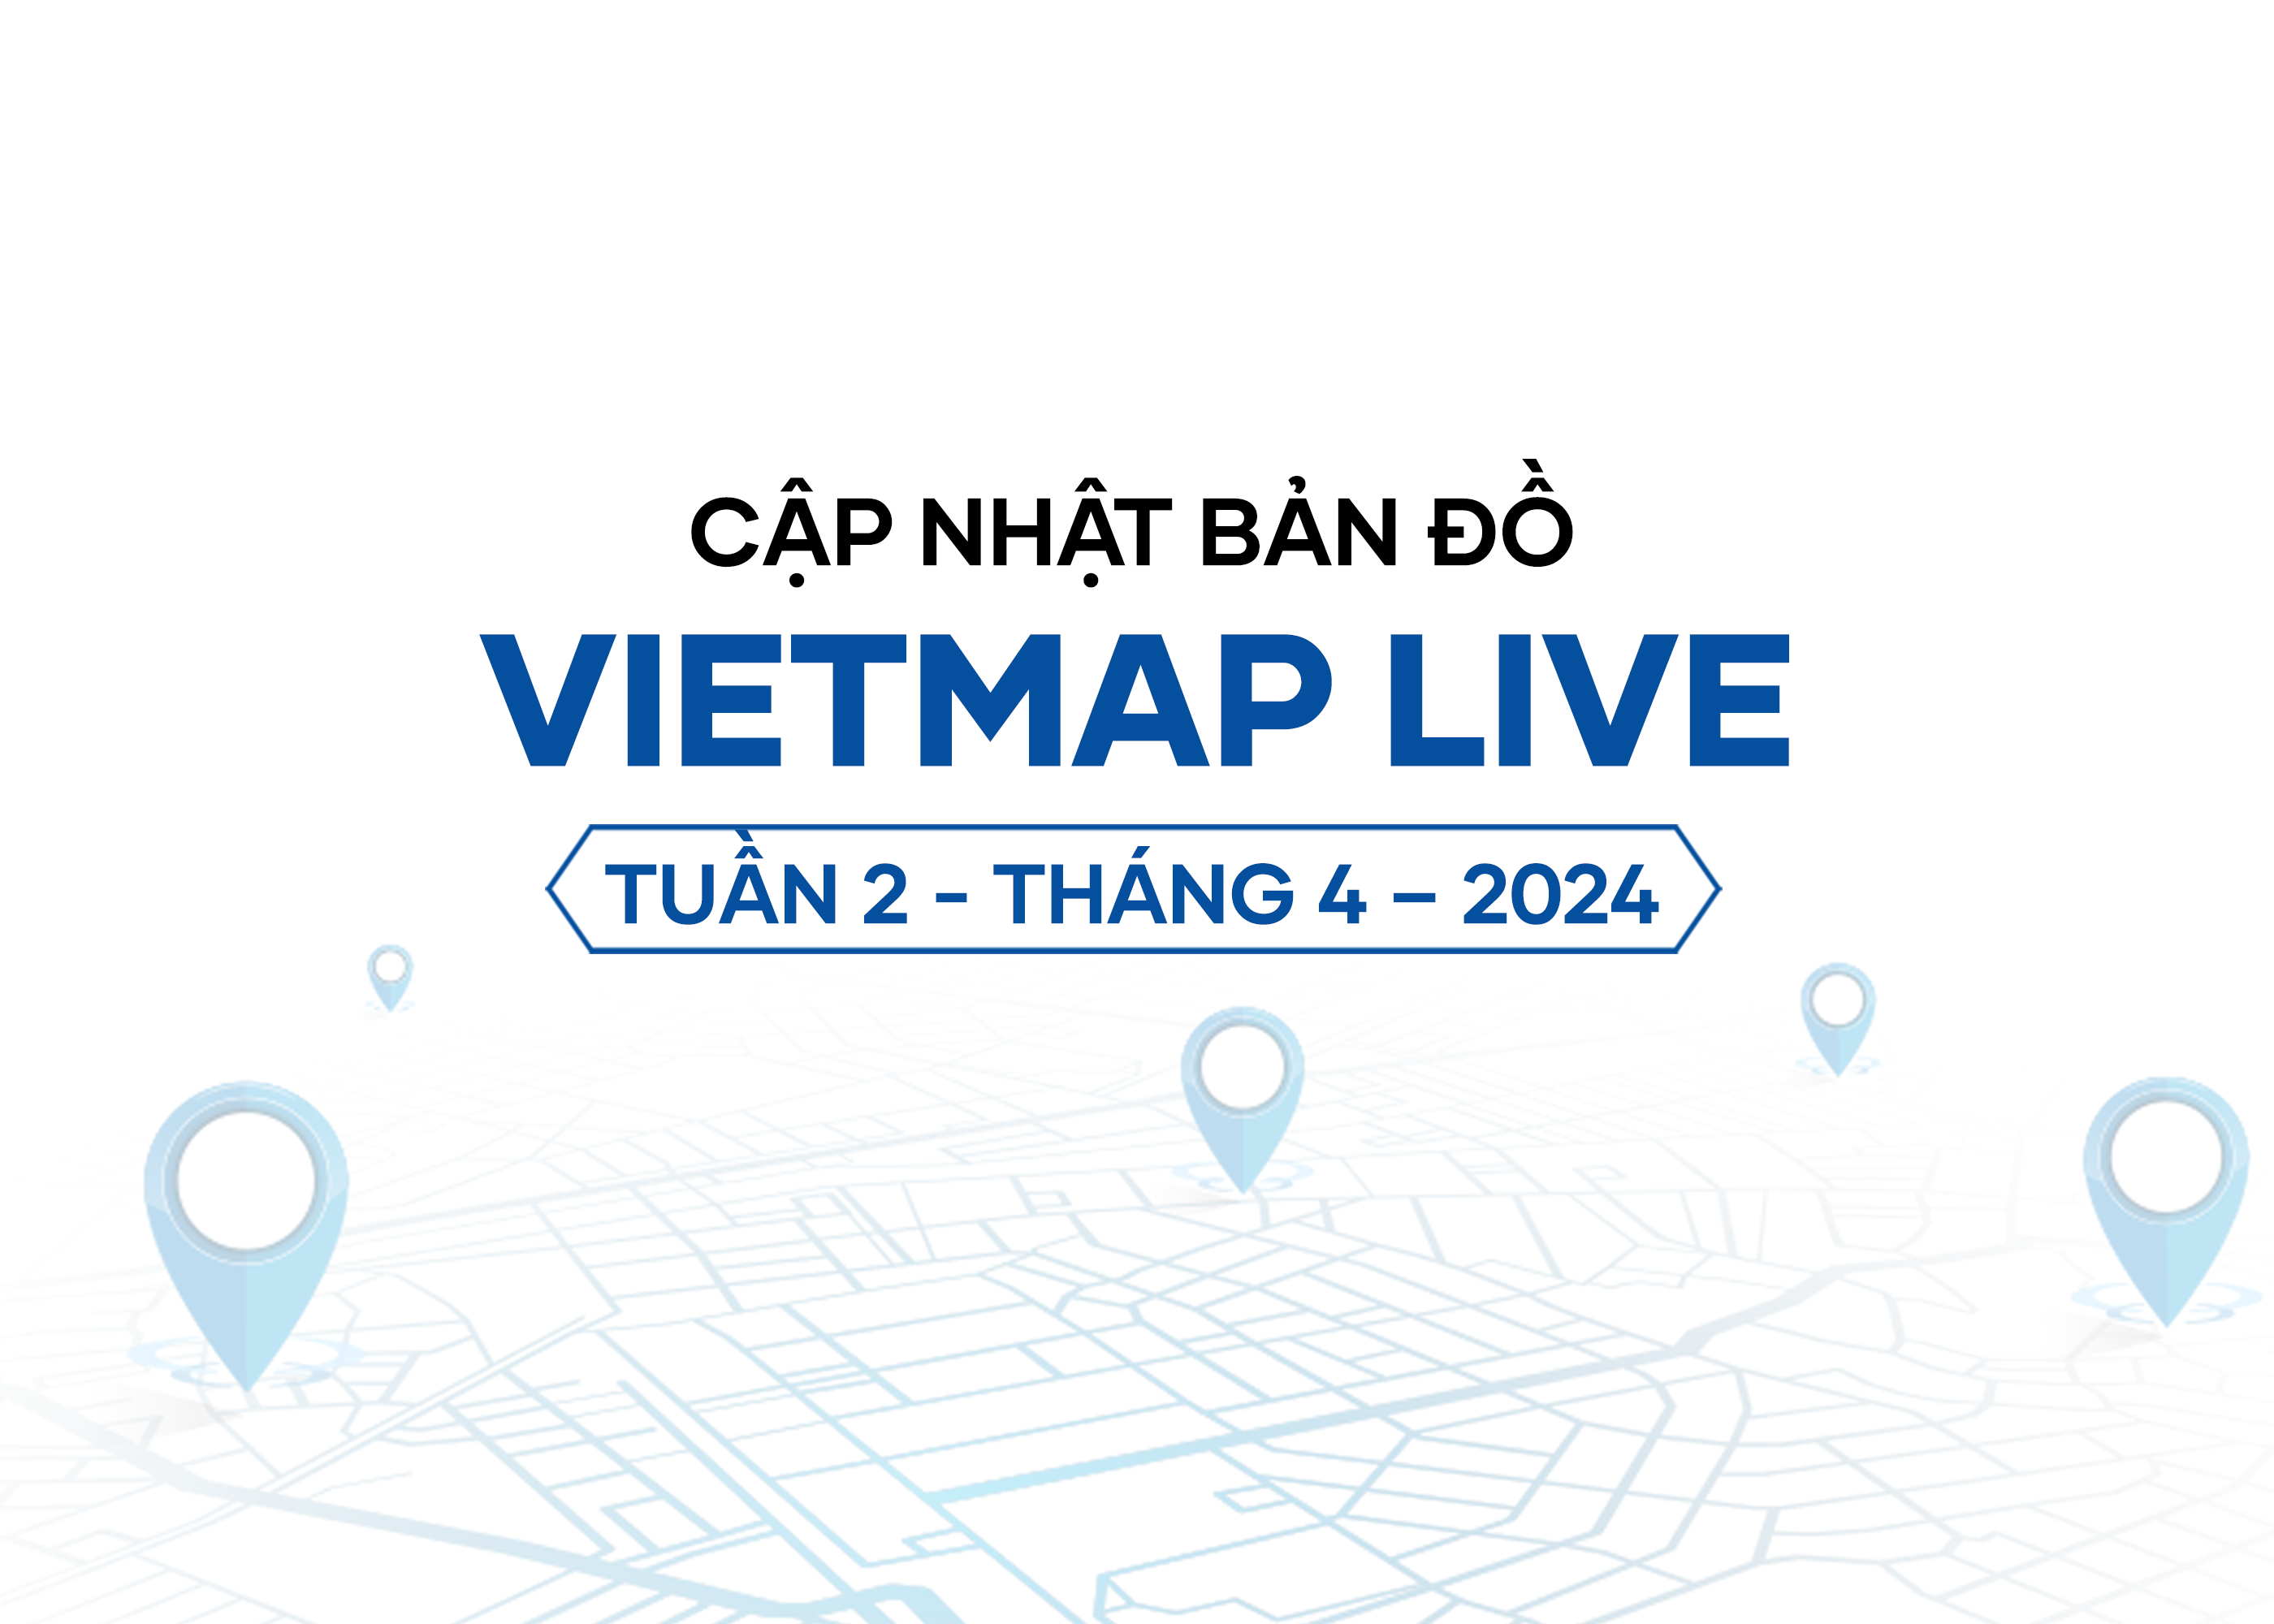 VIETMAP LIVE Cập Nhật Dữ Liệu Bản Đồ Tuần 2 - Tháng 4/2024